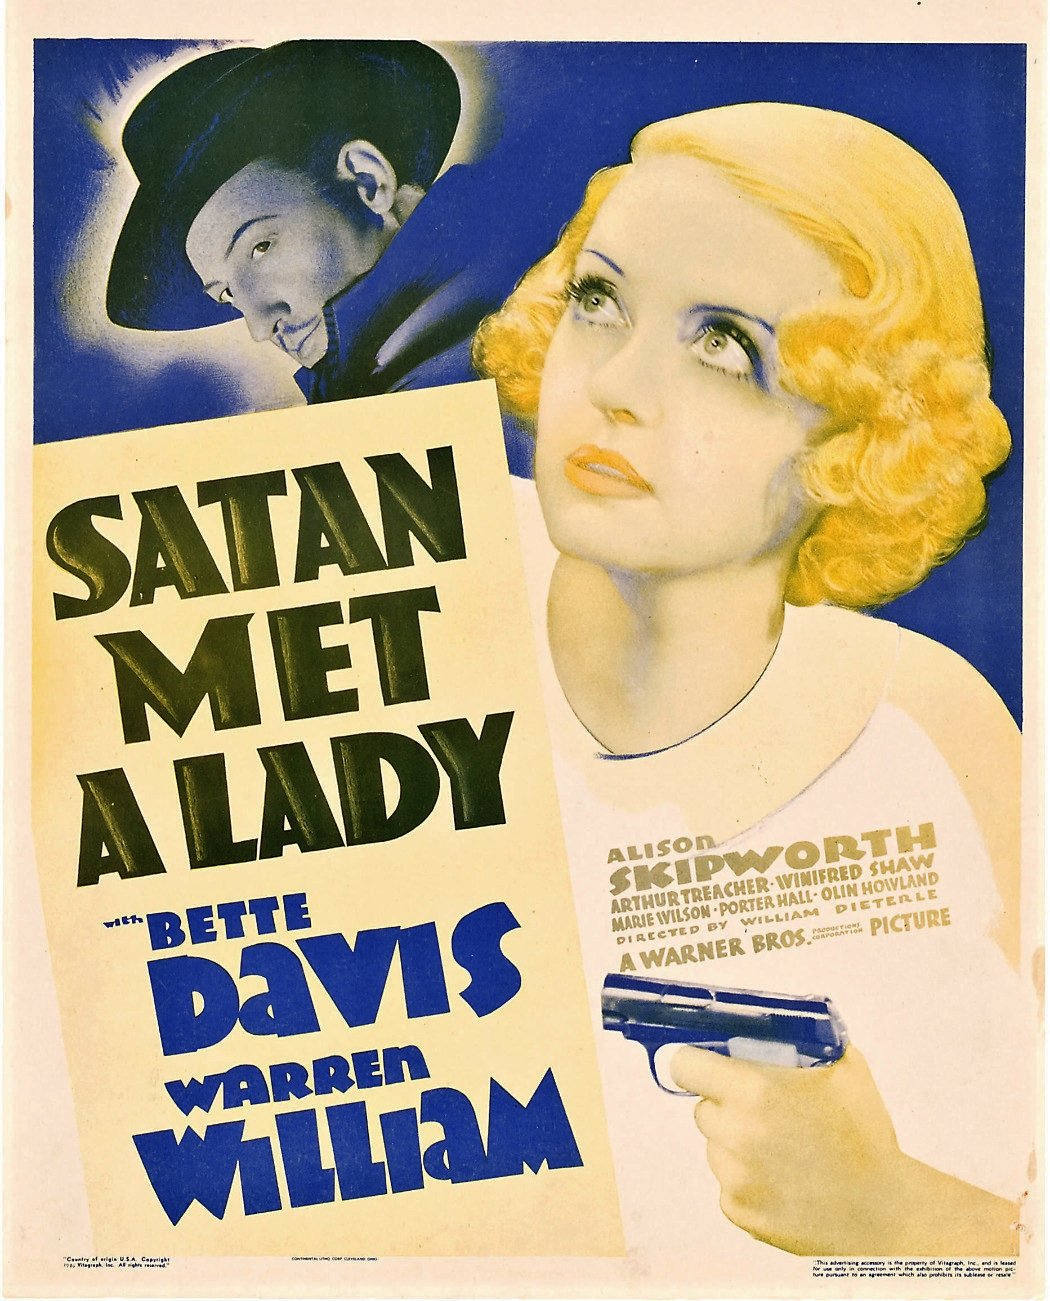 Satan Met a Lady Movie Poster